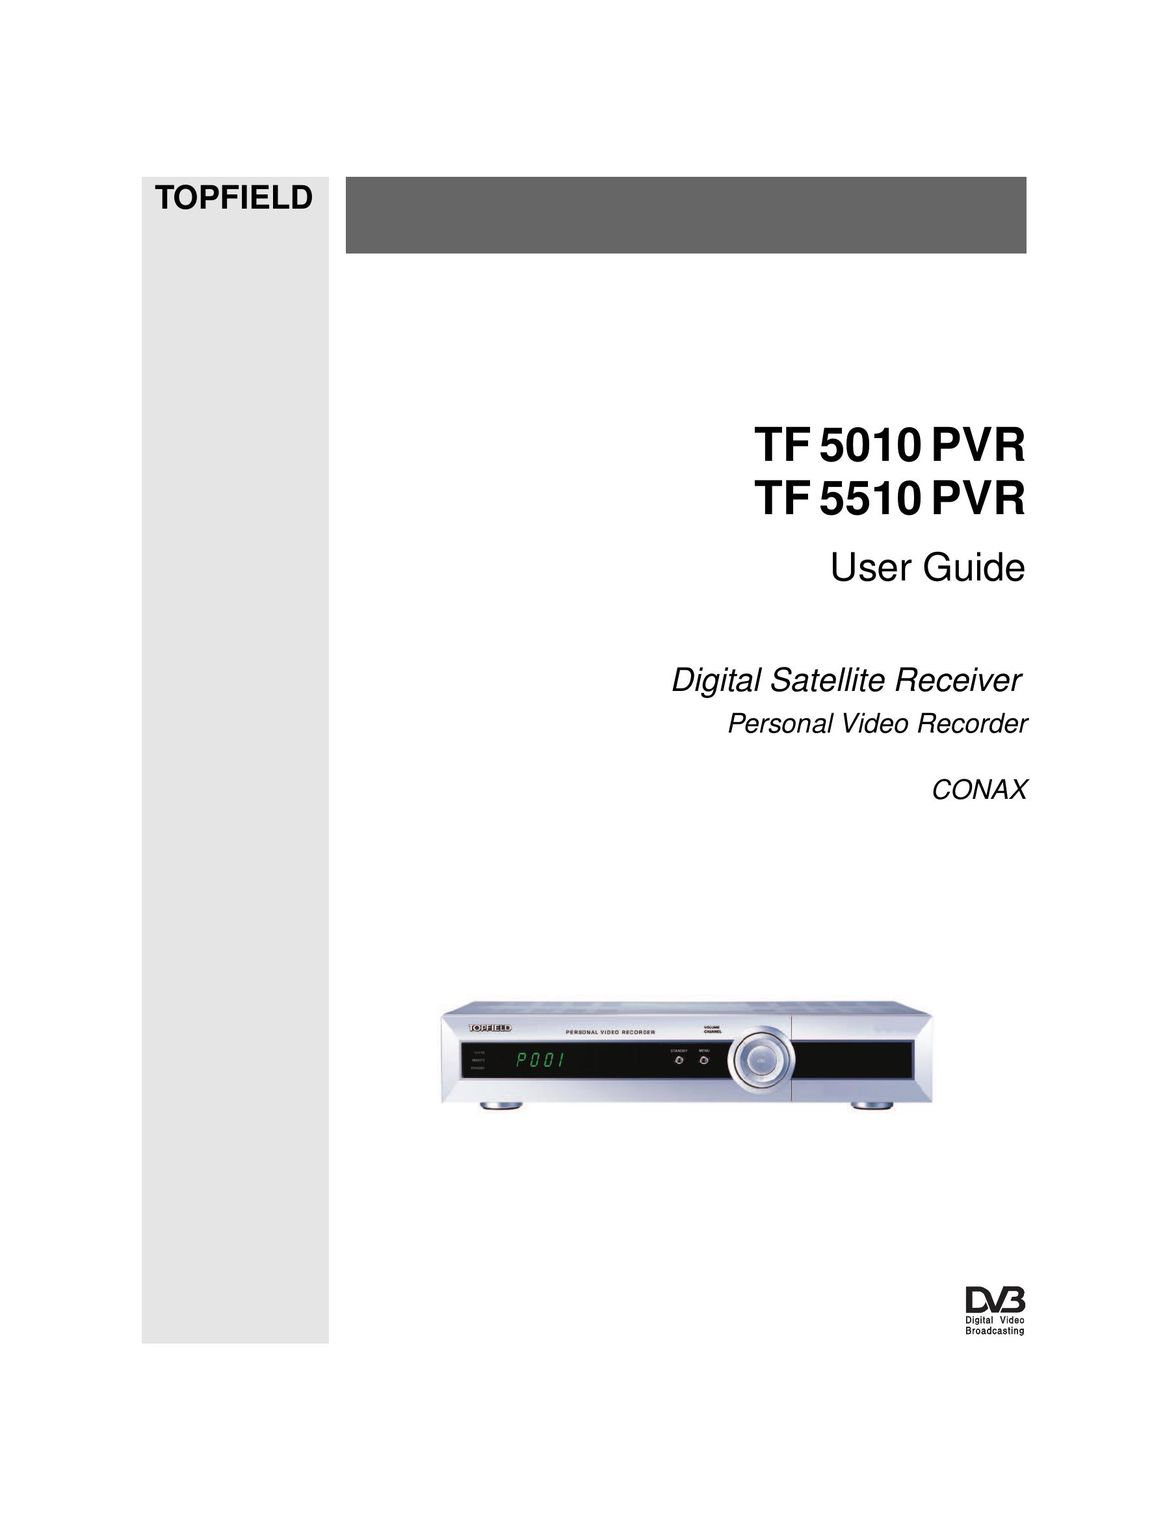 Topfield TF 5010 PVR DVR User Manual